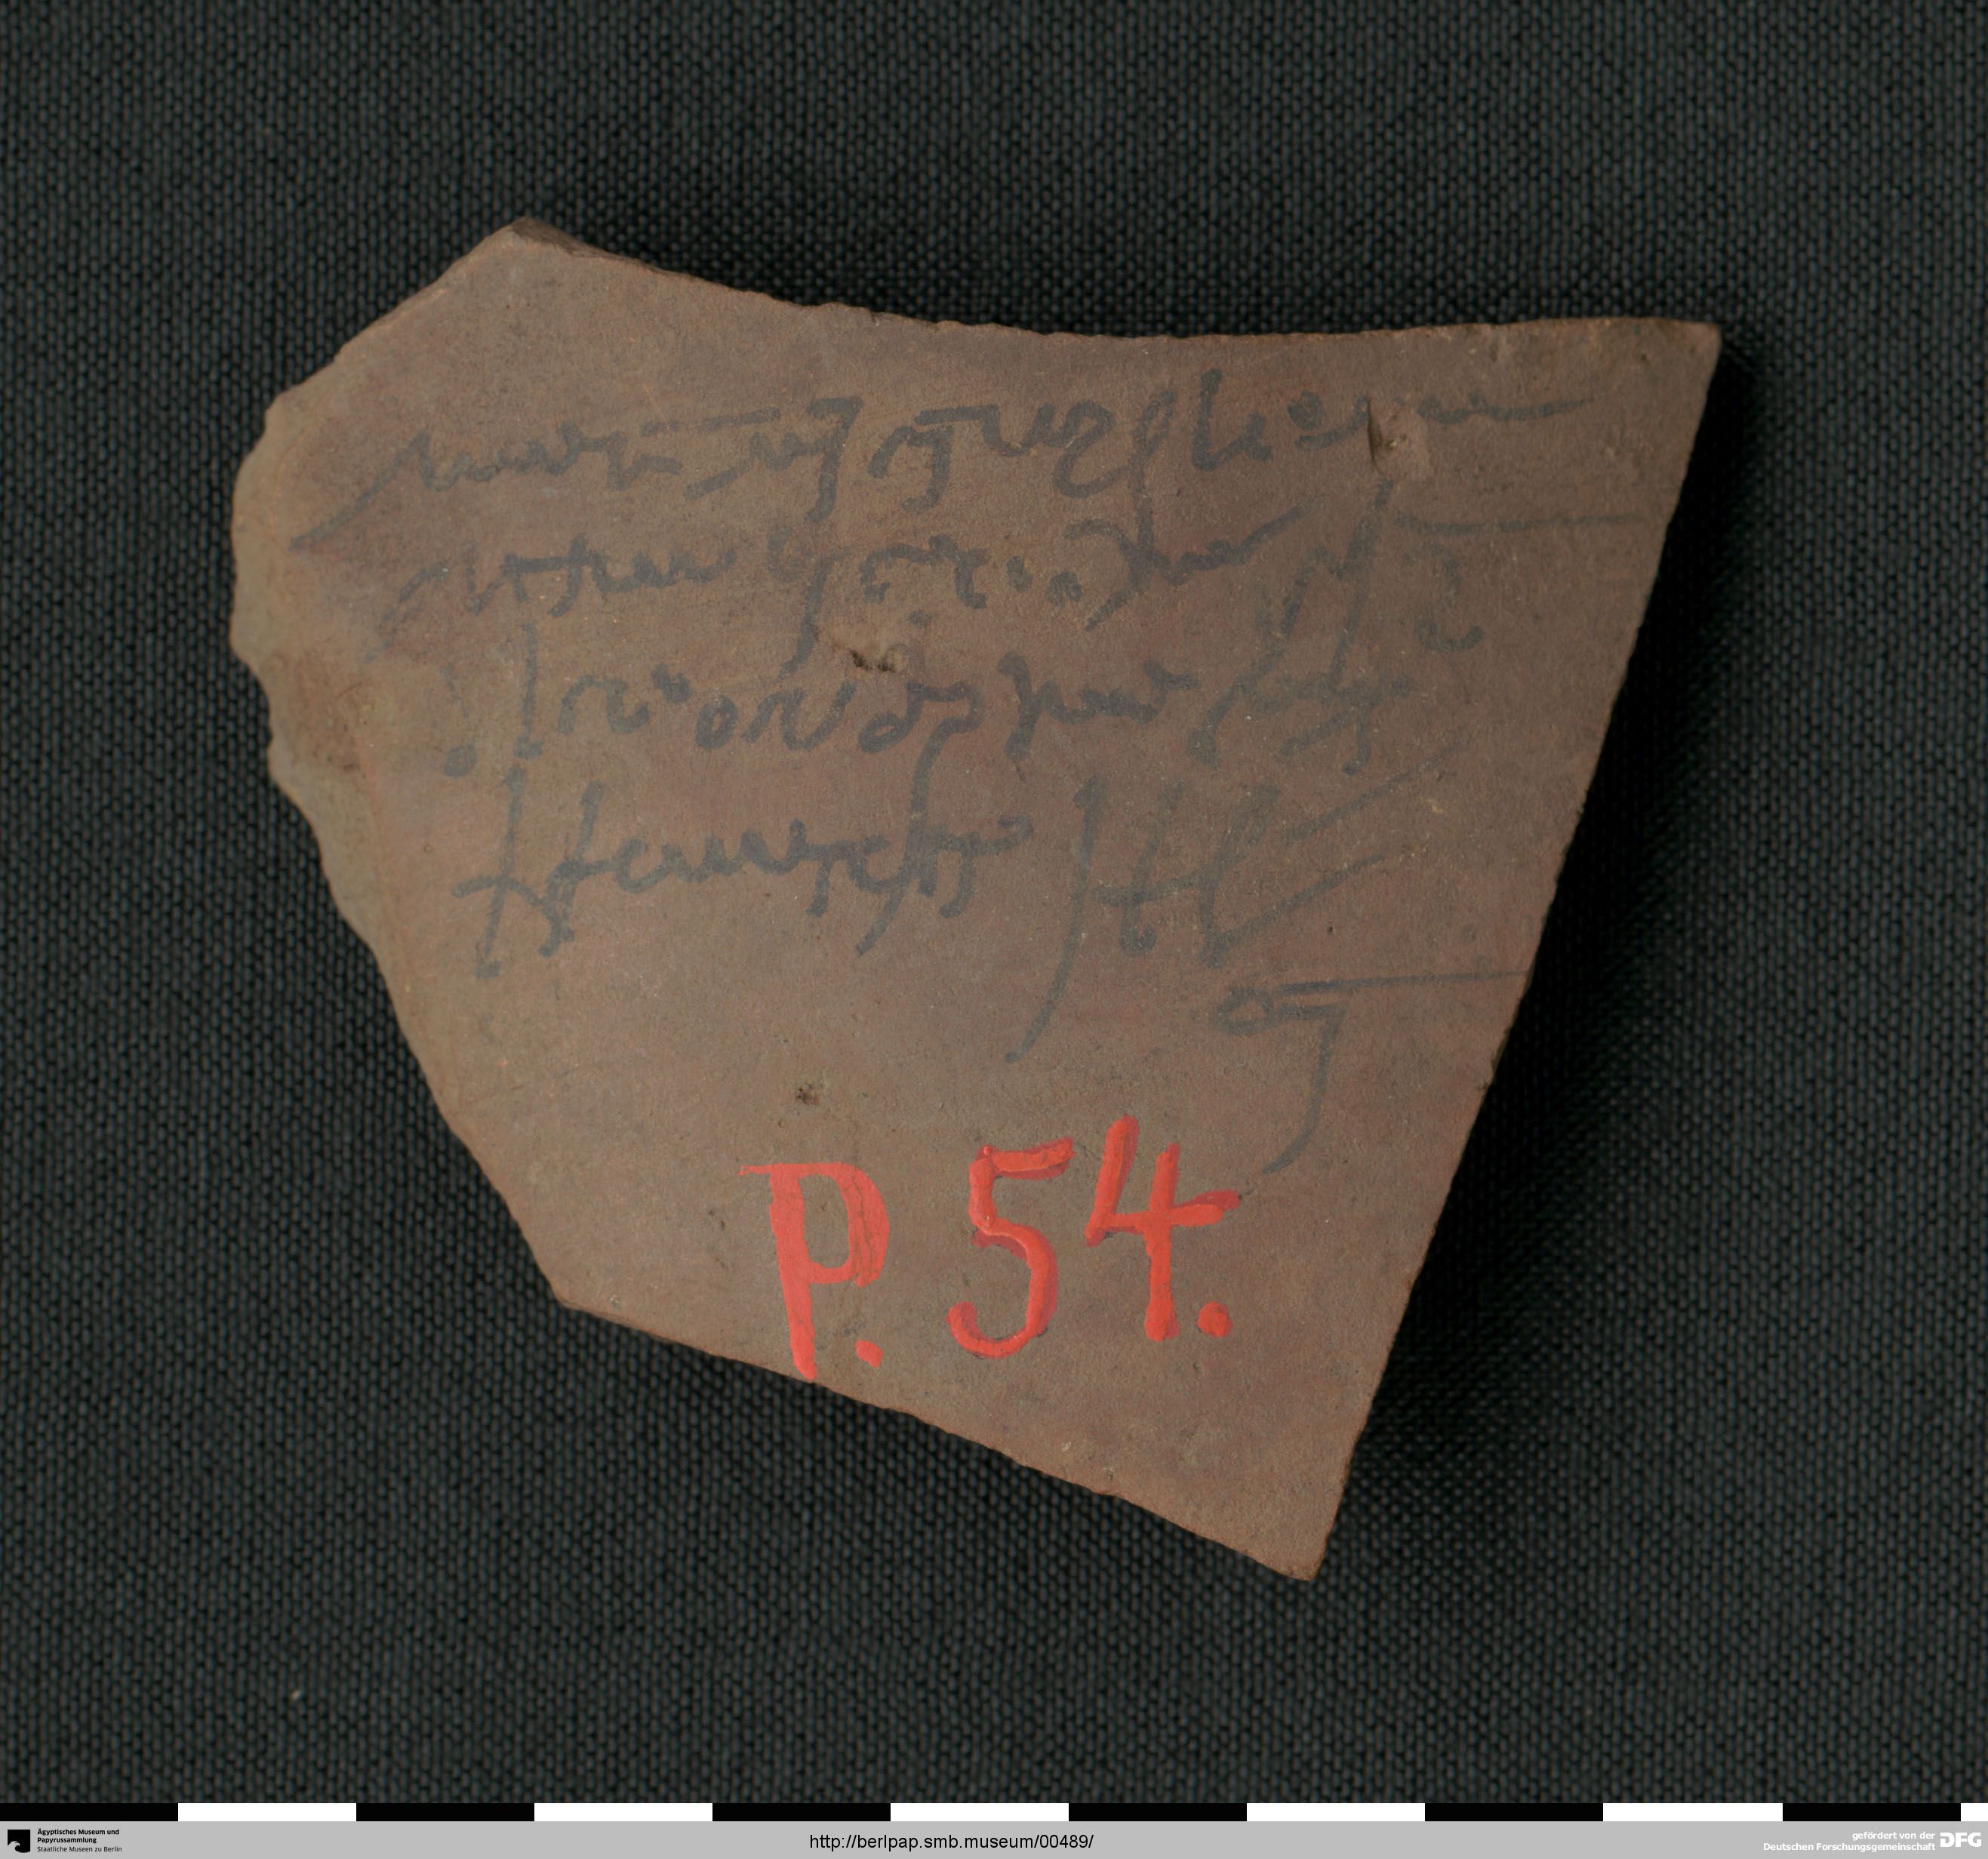 https://berlpap.smb.museum/Original/P_00054_S1_001.jpg (Ägyptisches Museum und Papyrussammlung, Staatliche Museen zu Berlin CC BY-NC-SA)